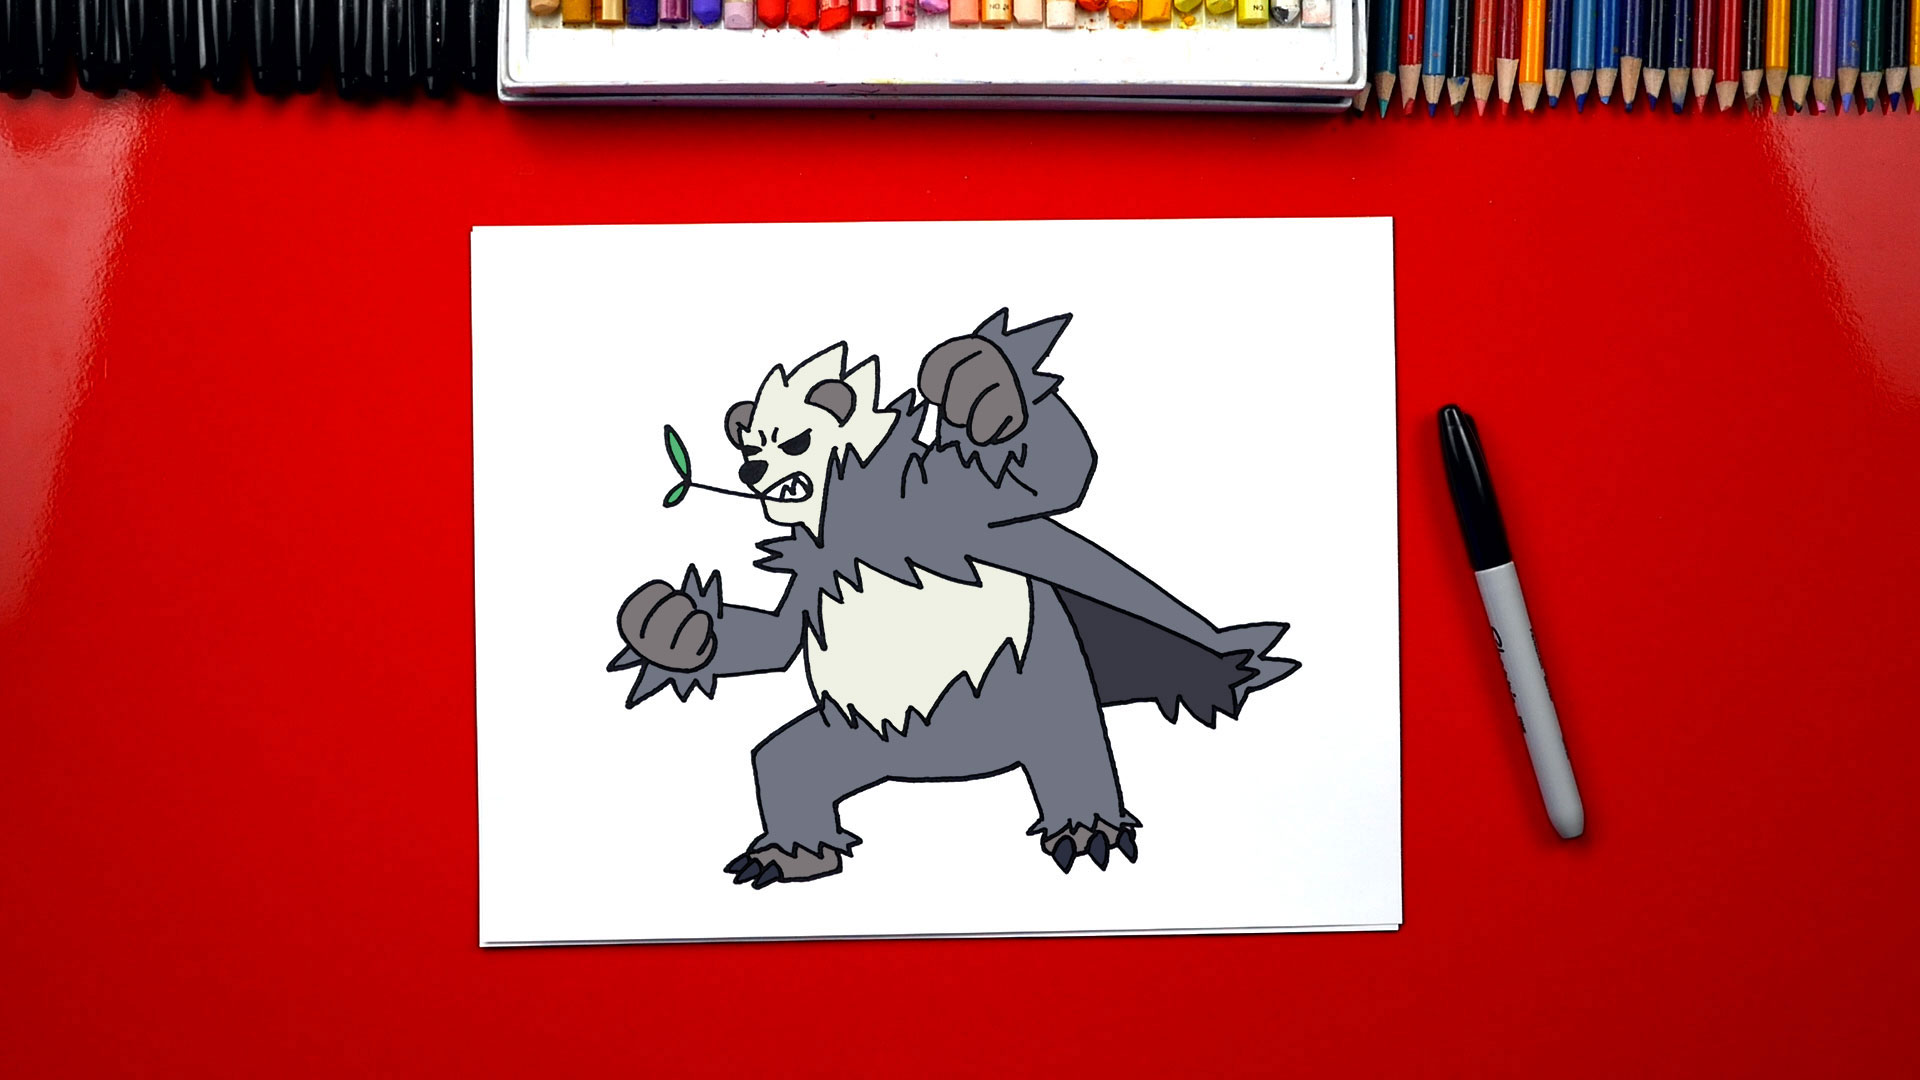 How To Draw Red (Pokémon) 